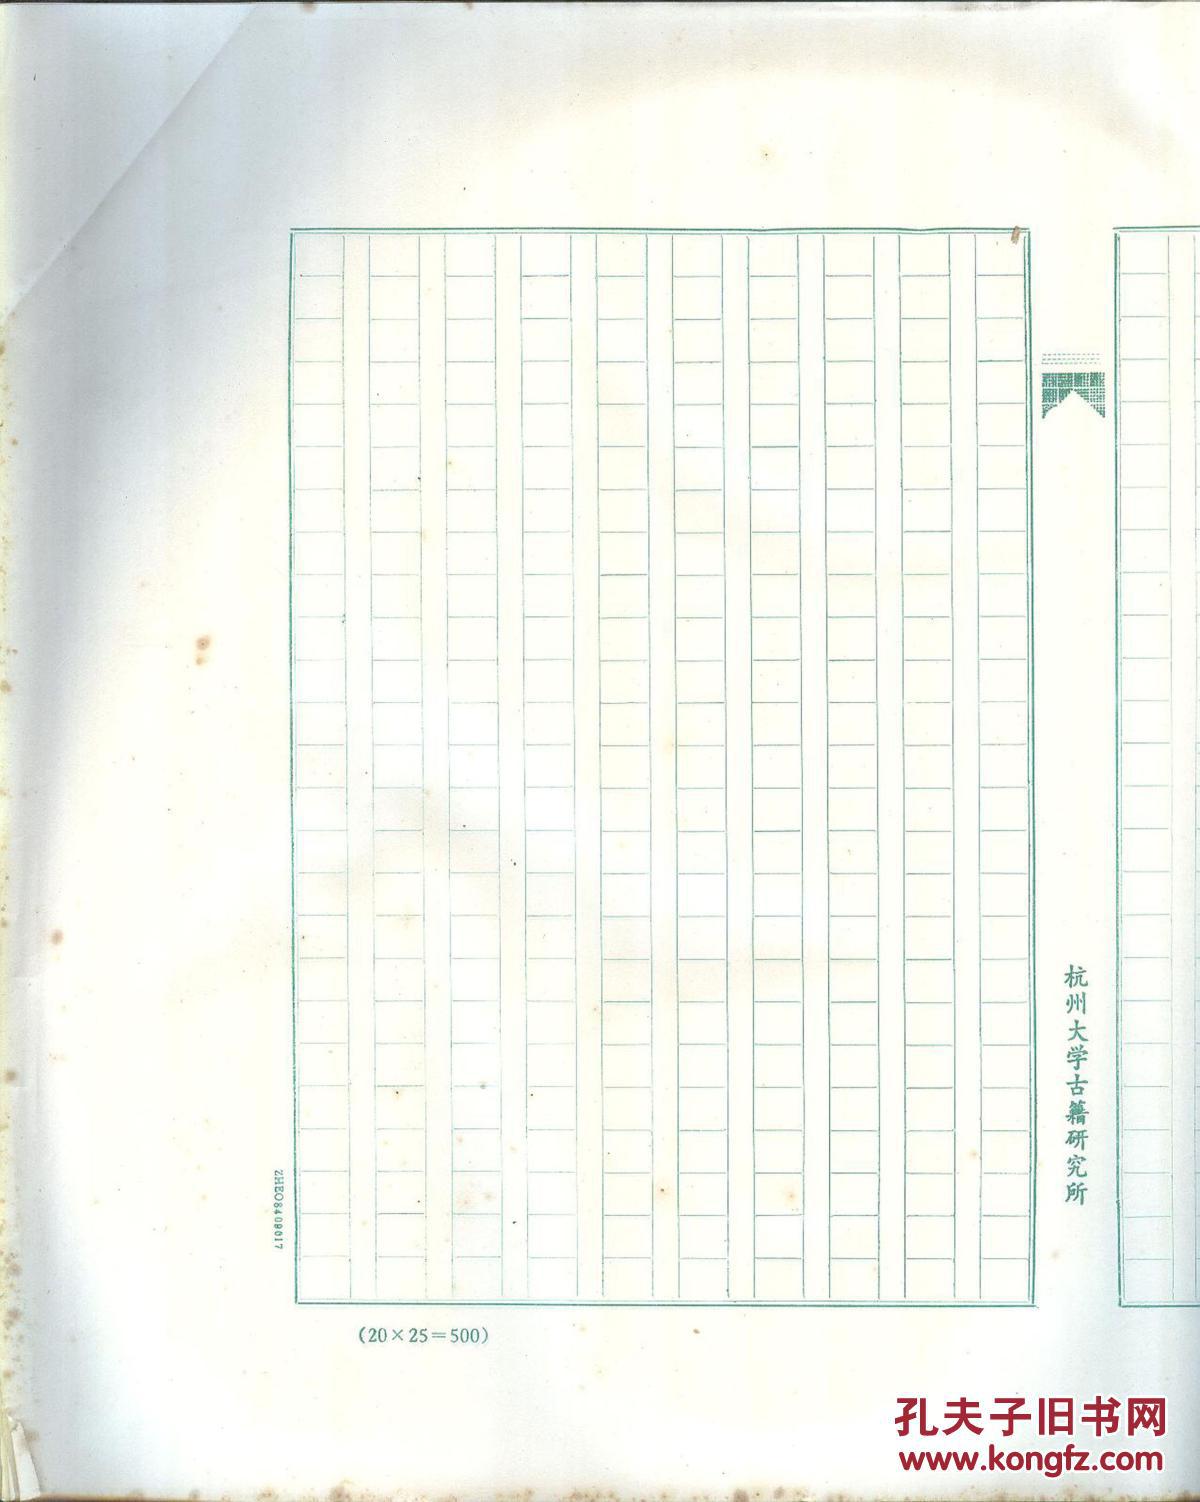 《杭州大学古籍研究所稿纸》旧存稿纸一沓 竖写格式约百张  25X20=500格 大八开